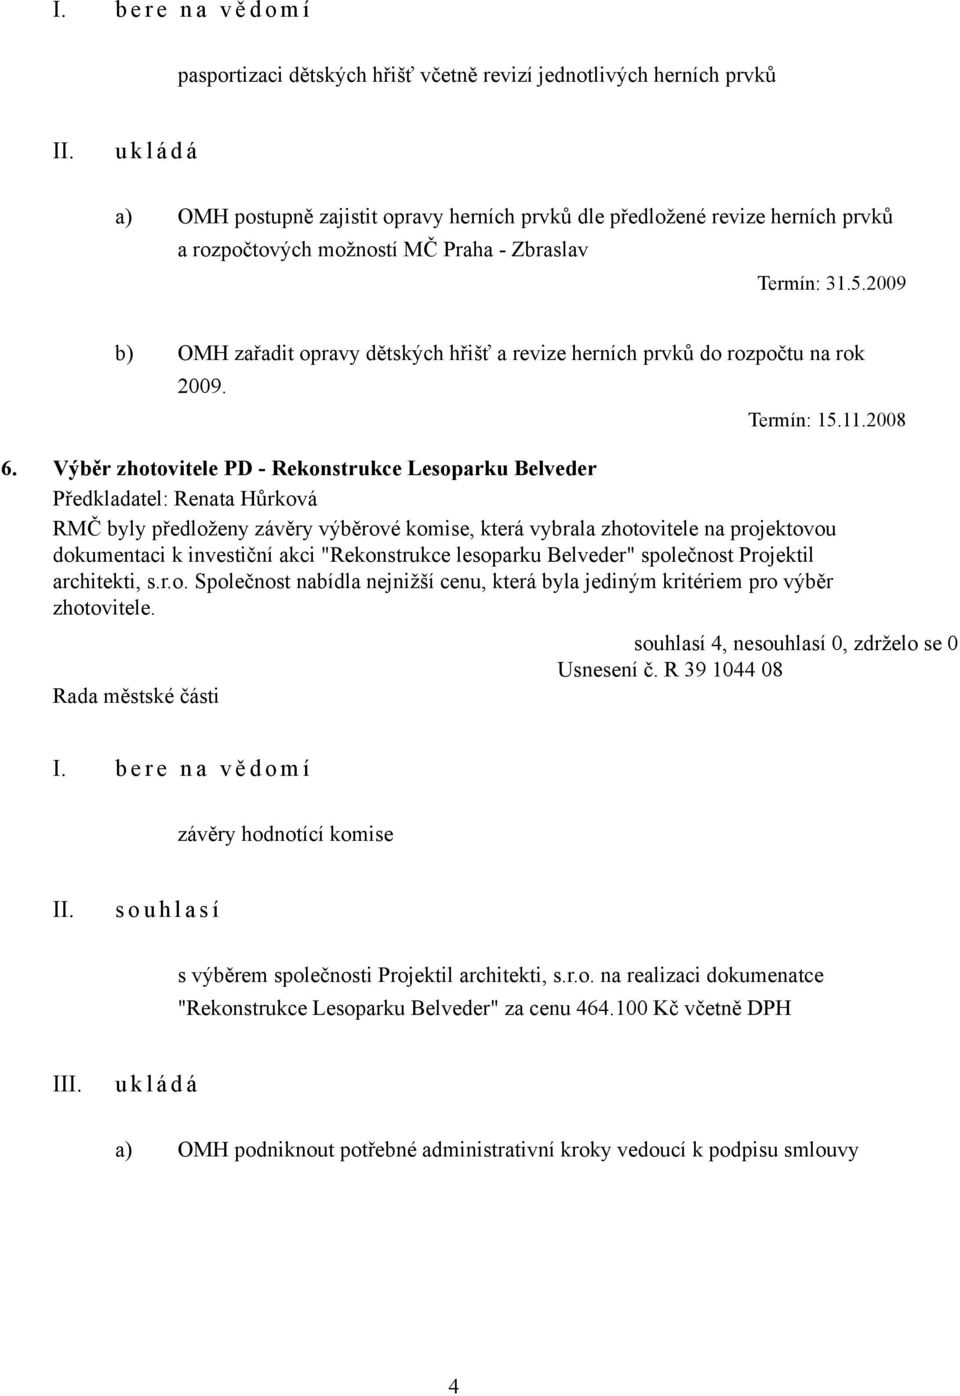 Výběr zhotovitele PD - Rekonstrukce Lesoparku Belveder RMČ byly předloženy závěry výběrové komise, která vybrala zhotovitele na projektovou dokumentaci k investiční akci "Rekonstrukce lesoparku